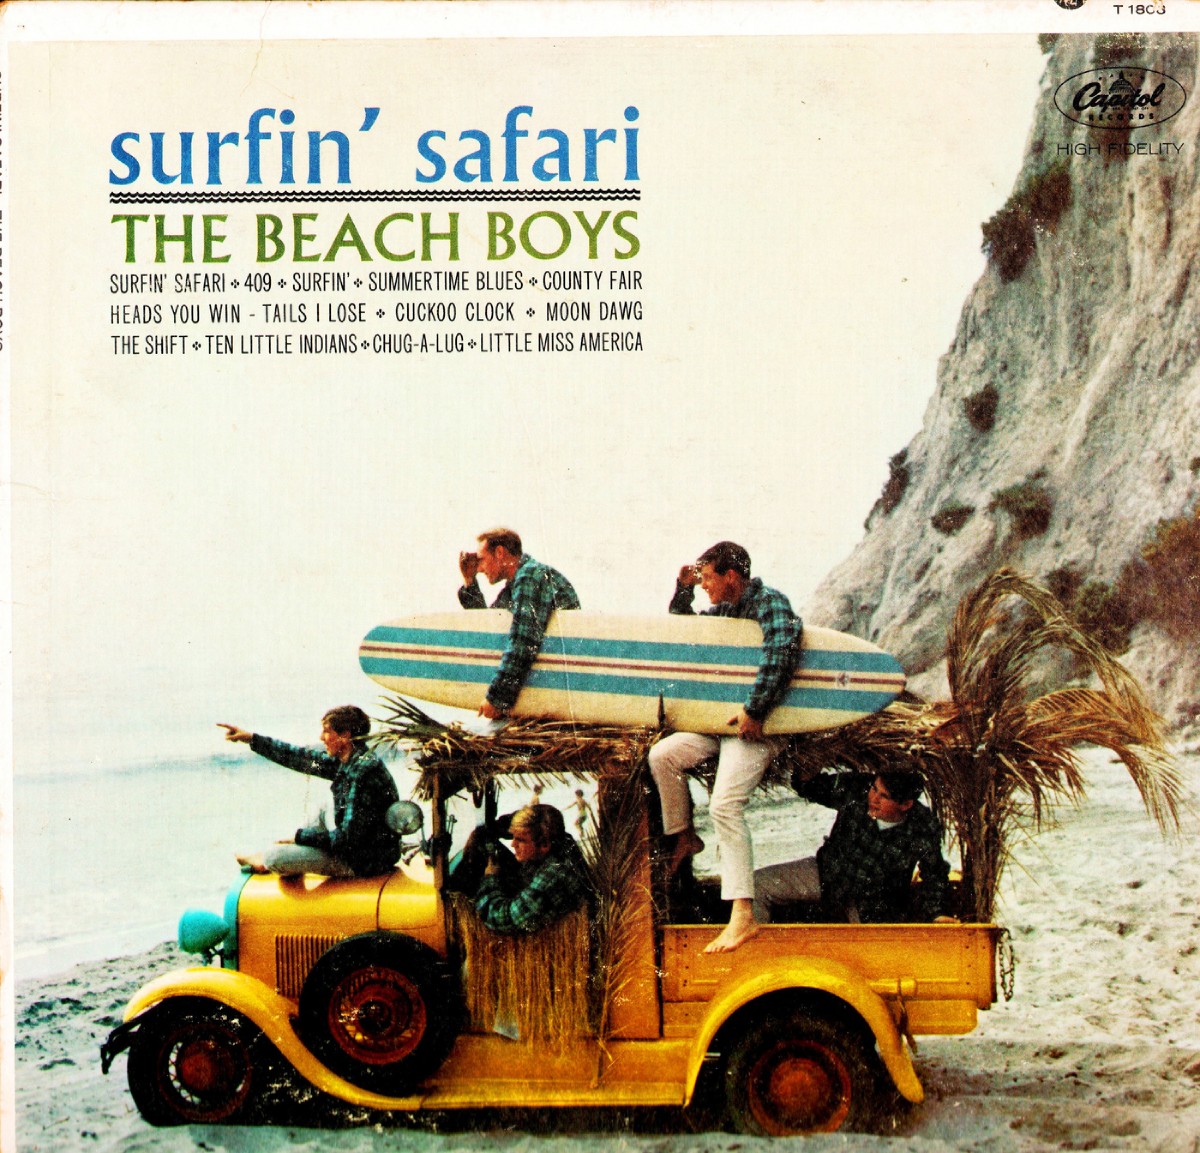 Portada de "Surfin' Safari" de The Beach Boys